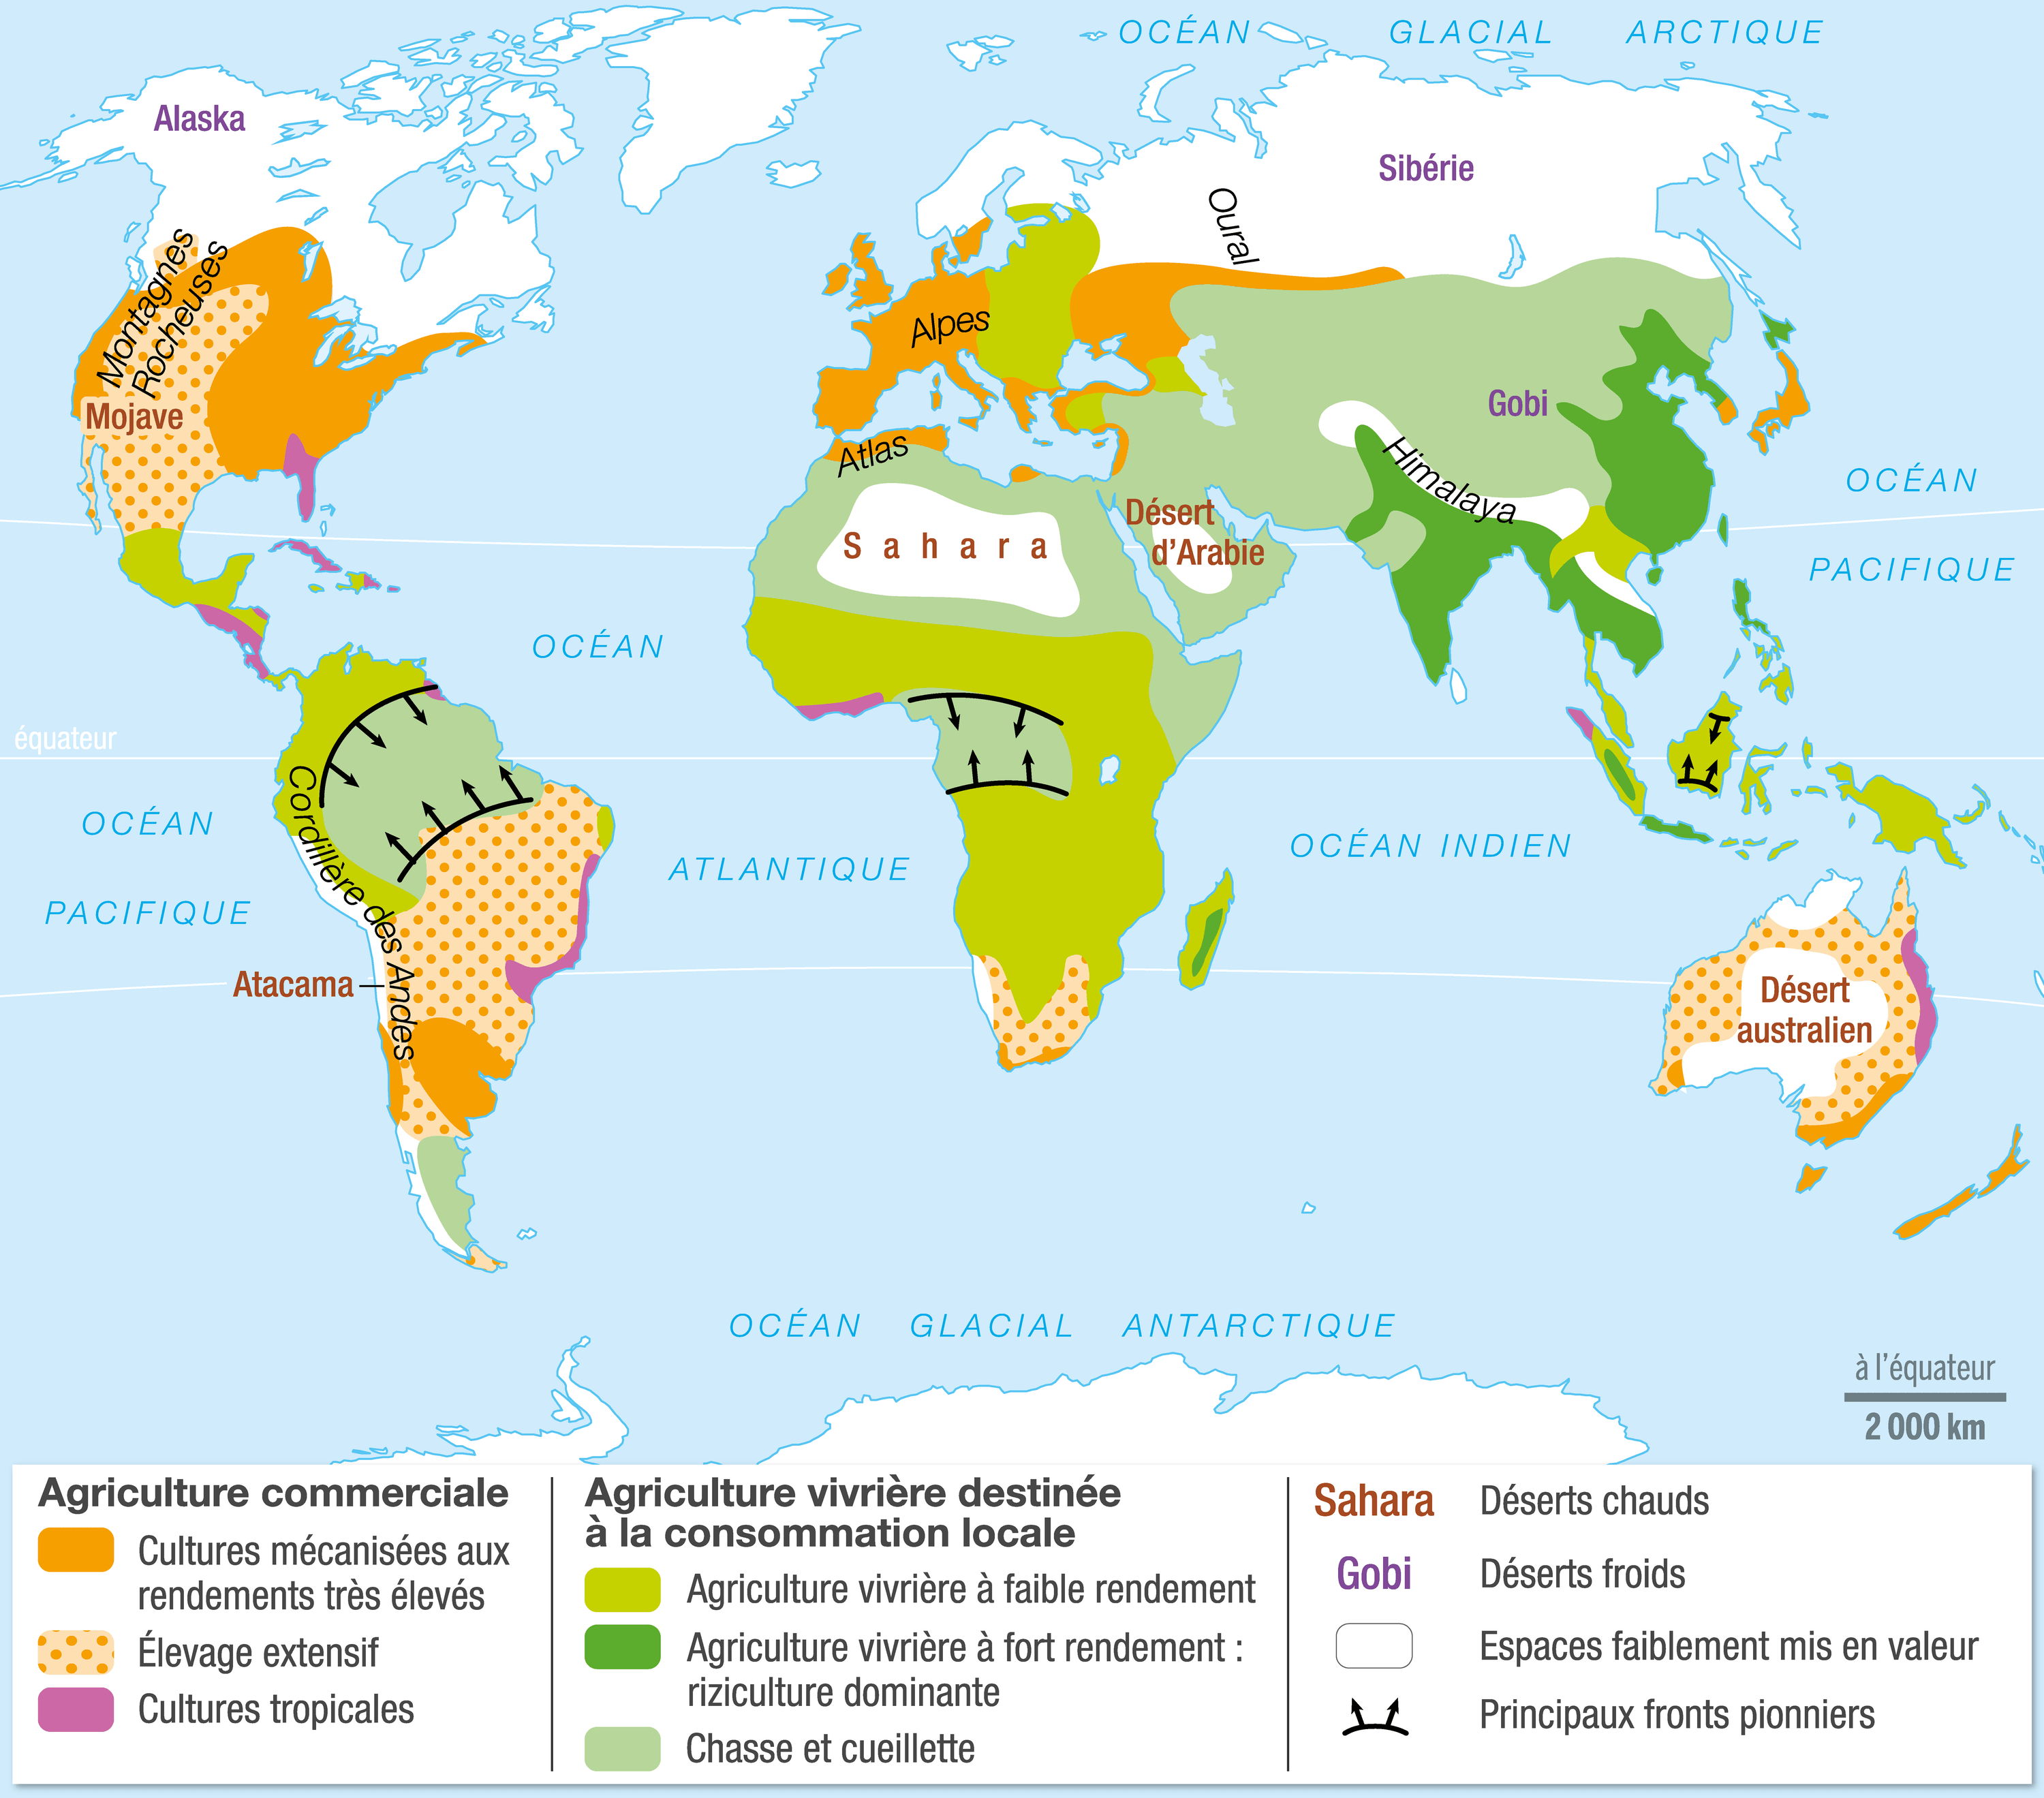 Les différents types d’agricultures dans le monde